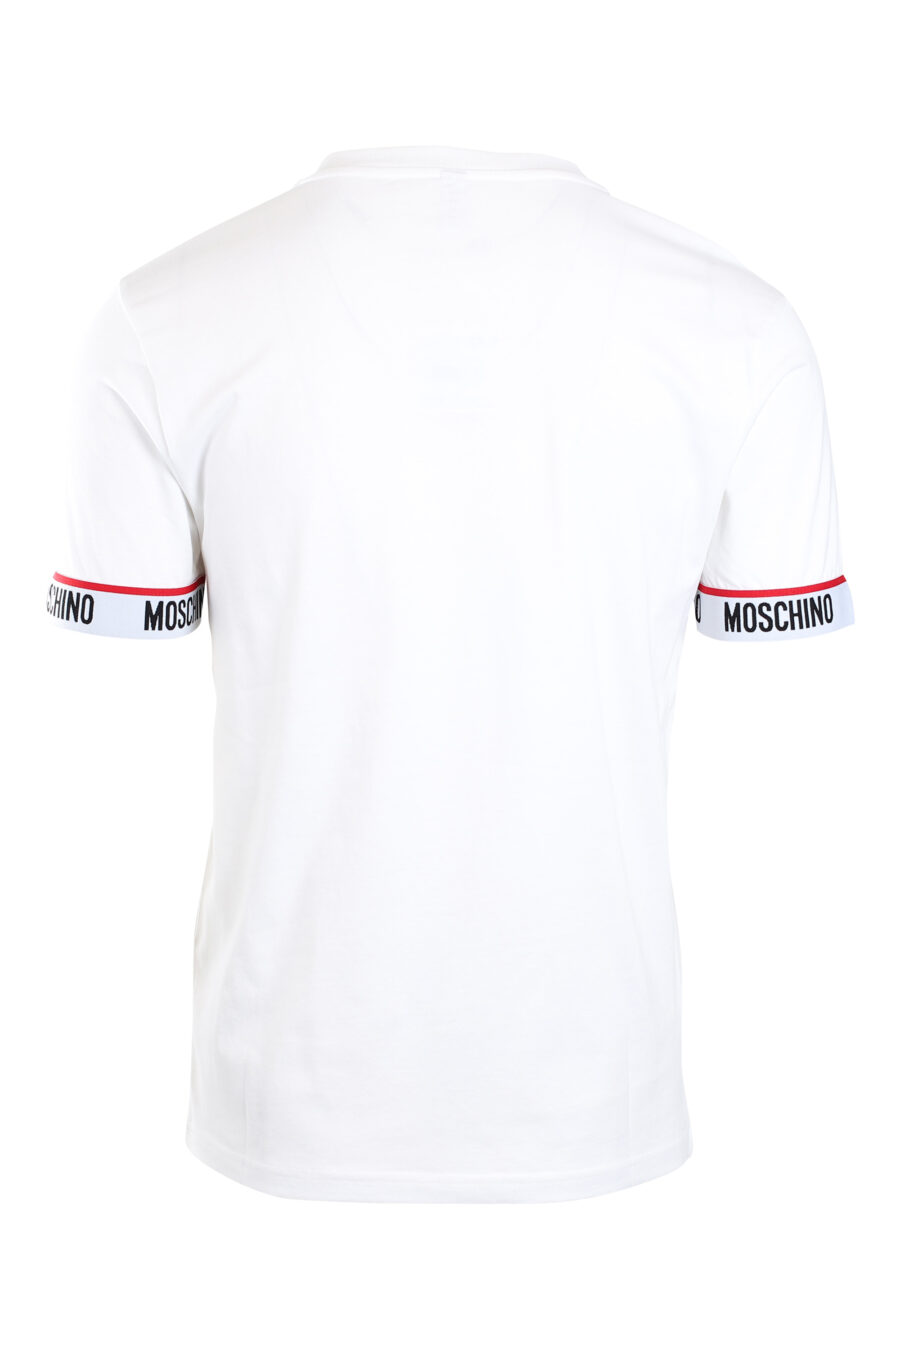 Weißes T-Shirt mit Logoband am Ärmel und einfarbigem Mini-Logo - IMG 2173